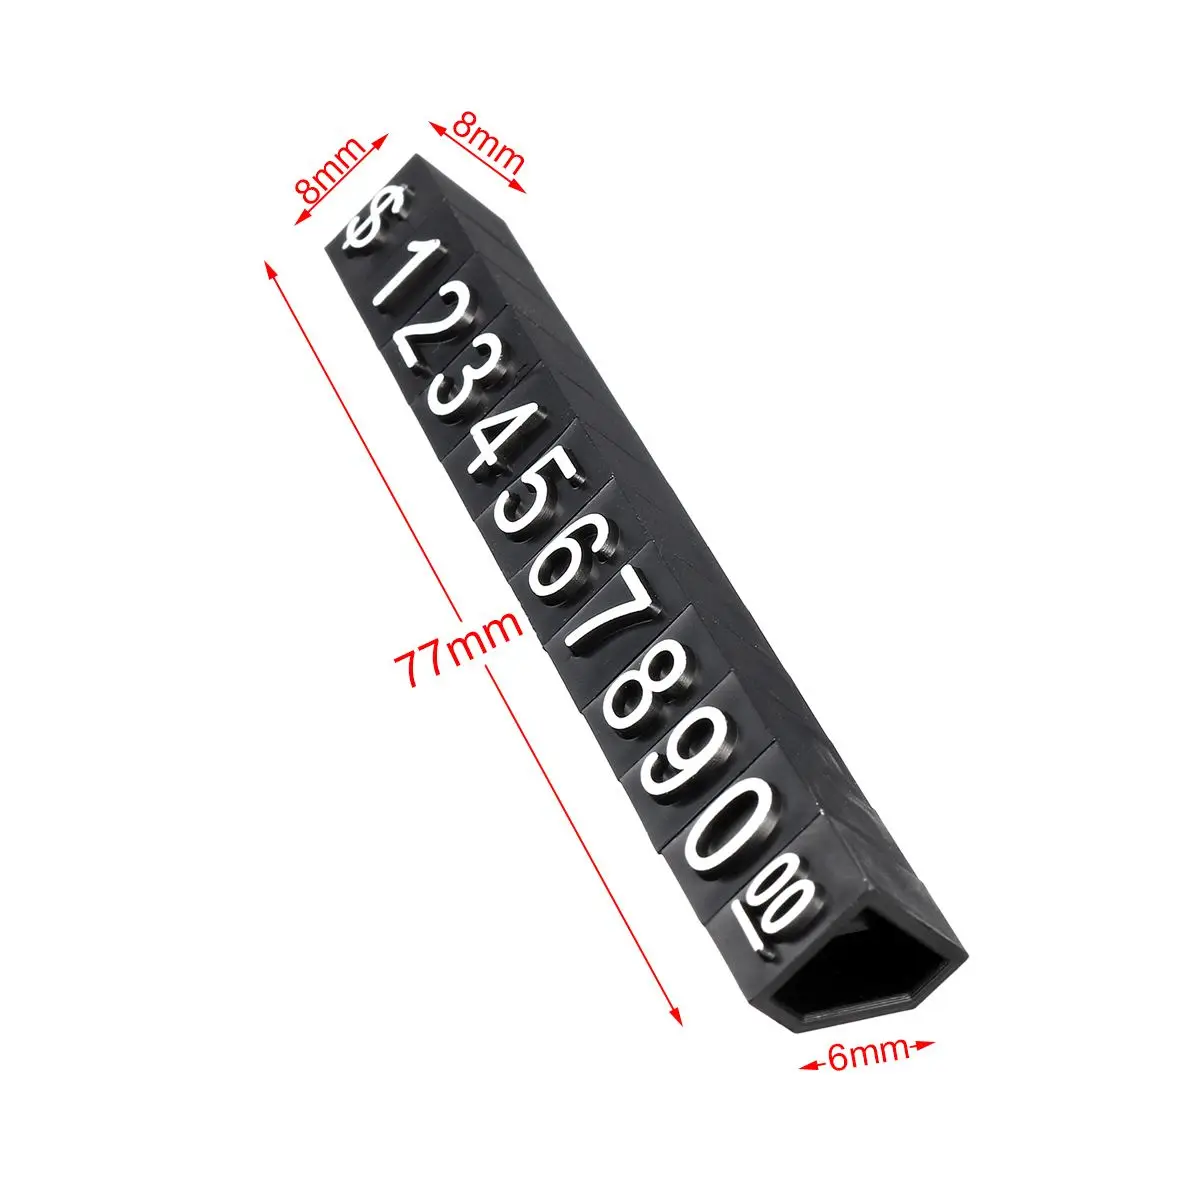 30 шт. ценник доллар кубики с цифрами монтажные блоки палка комбинированный номер значка знак часы ювелирные изделия Цена дисплей стенд